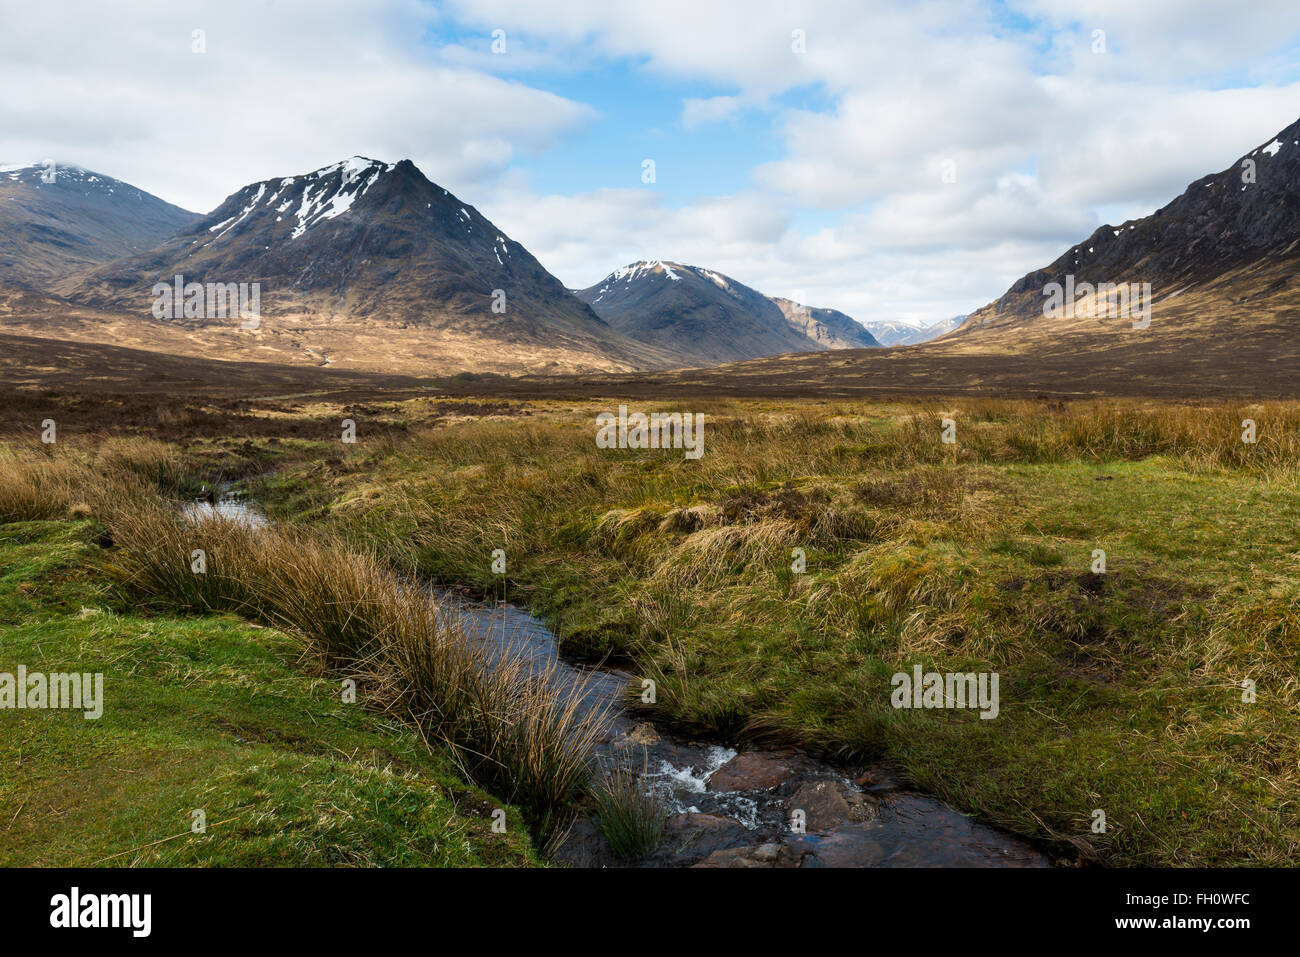 Typisch schottischen Highlands mit Bergen, Hügeln, Creek, Heidekraut und Wolken am Himmel. Stockfoto